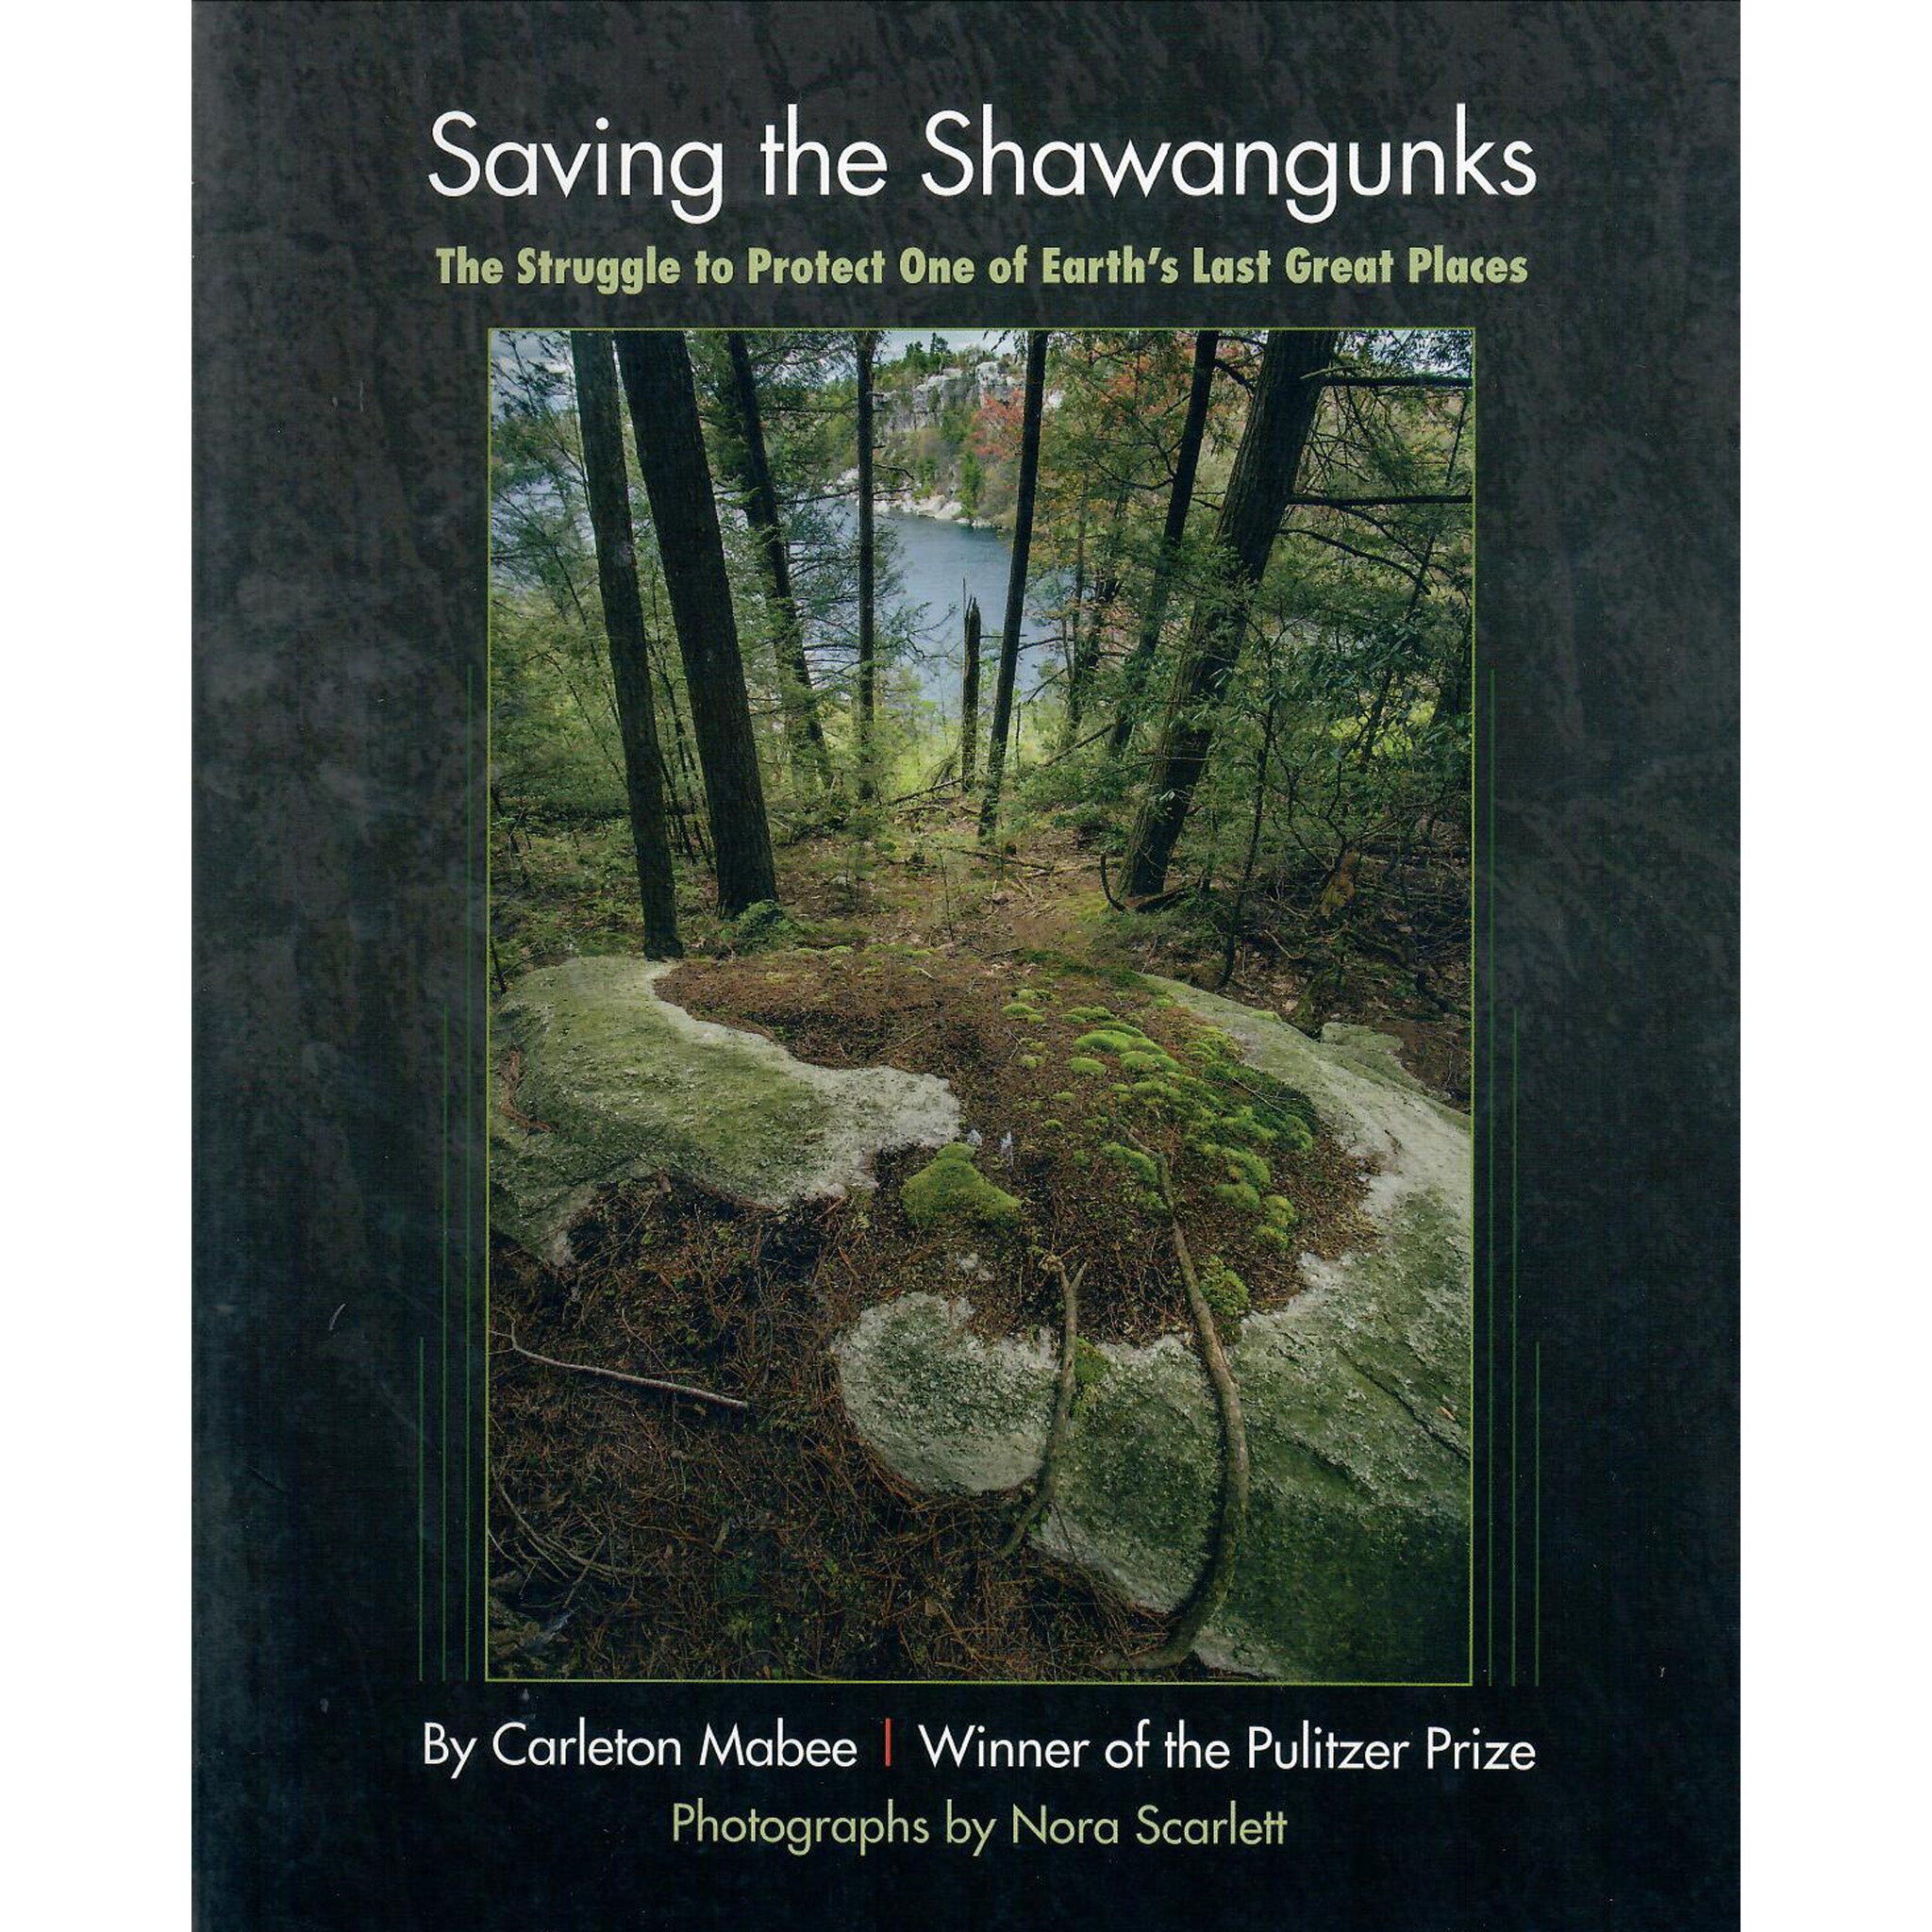 Saving the Shawangunks